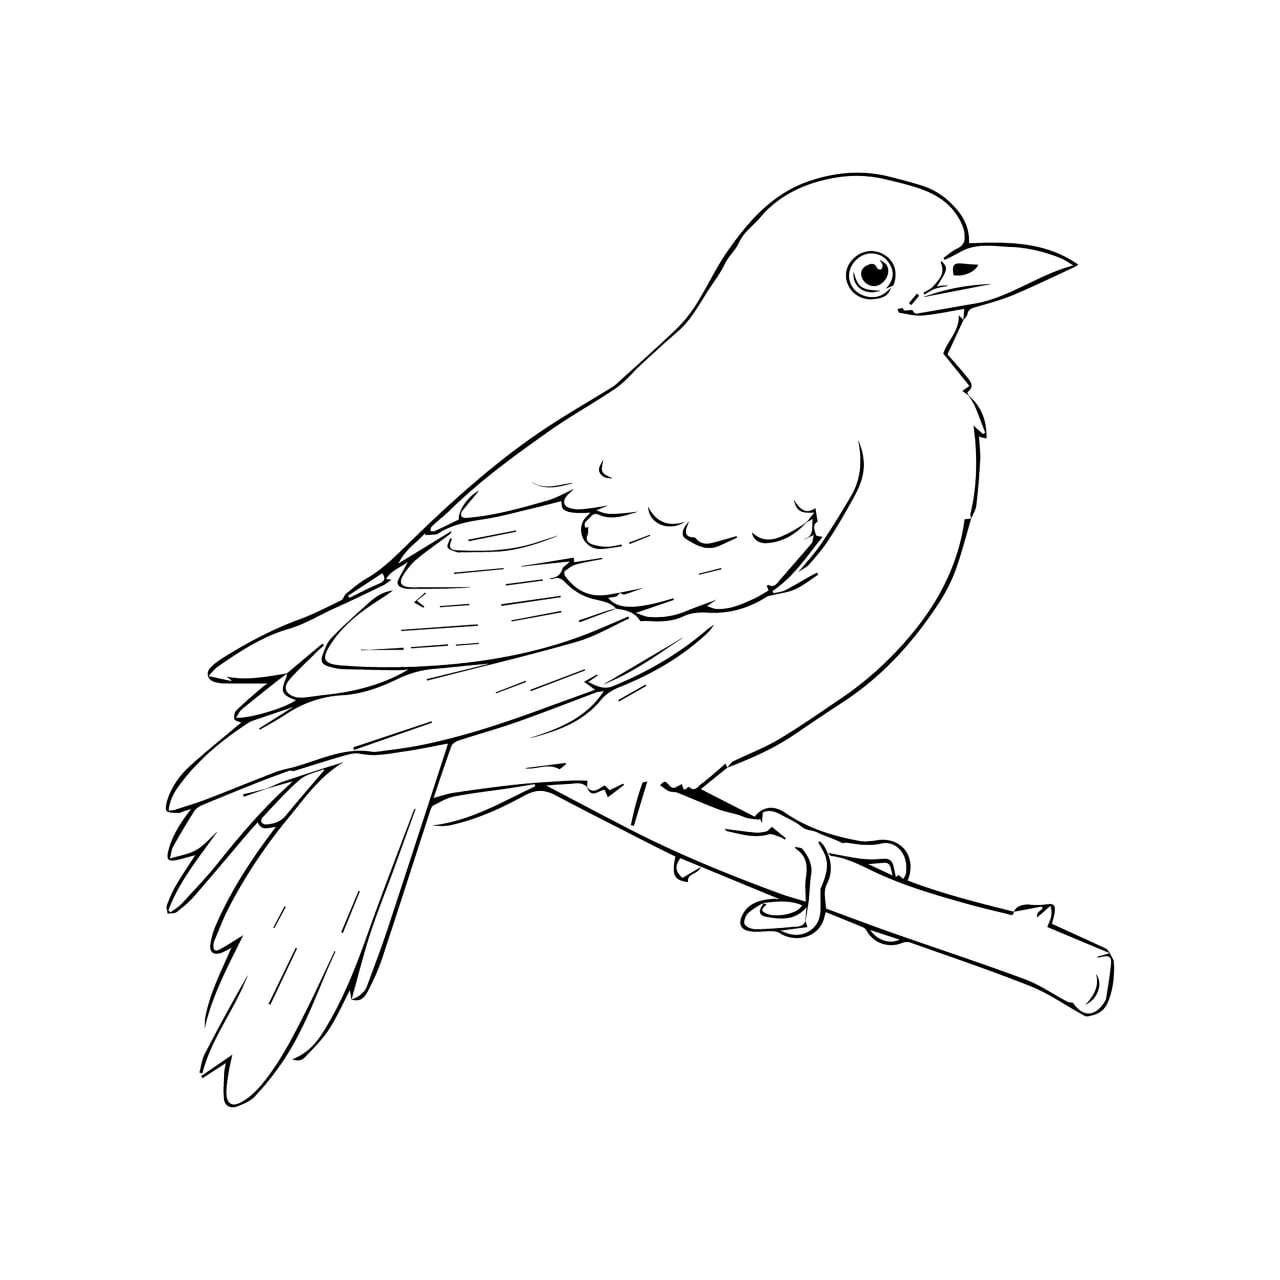 Раскраска для детей: птичка синица на ветке